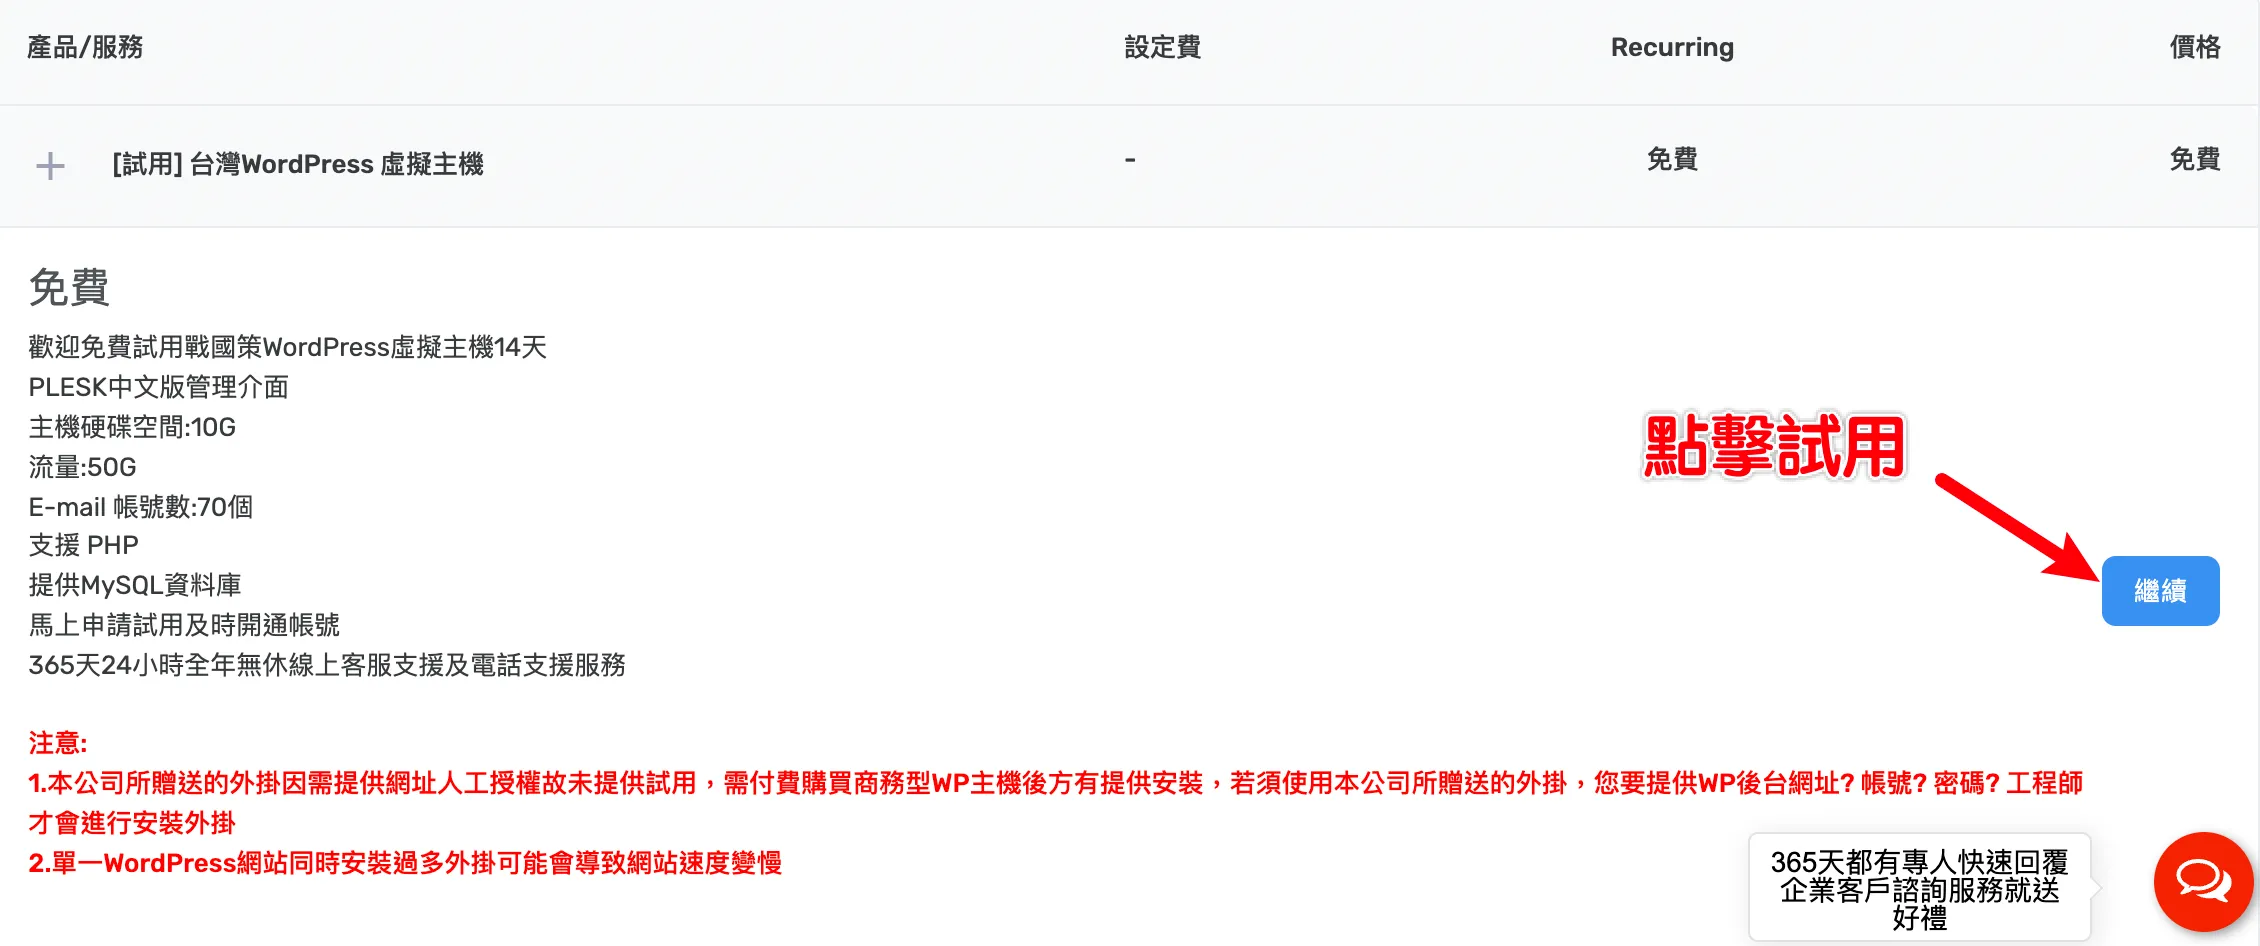 戰國策 WordPress 架站主機，中華電信機房+免費試用14天！ 18